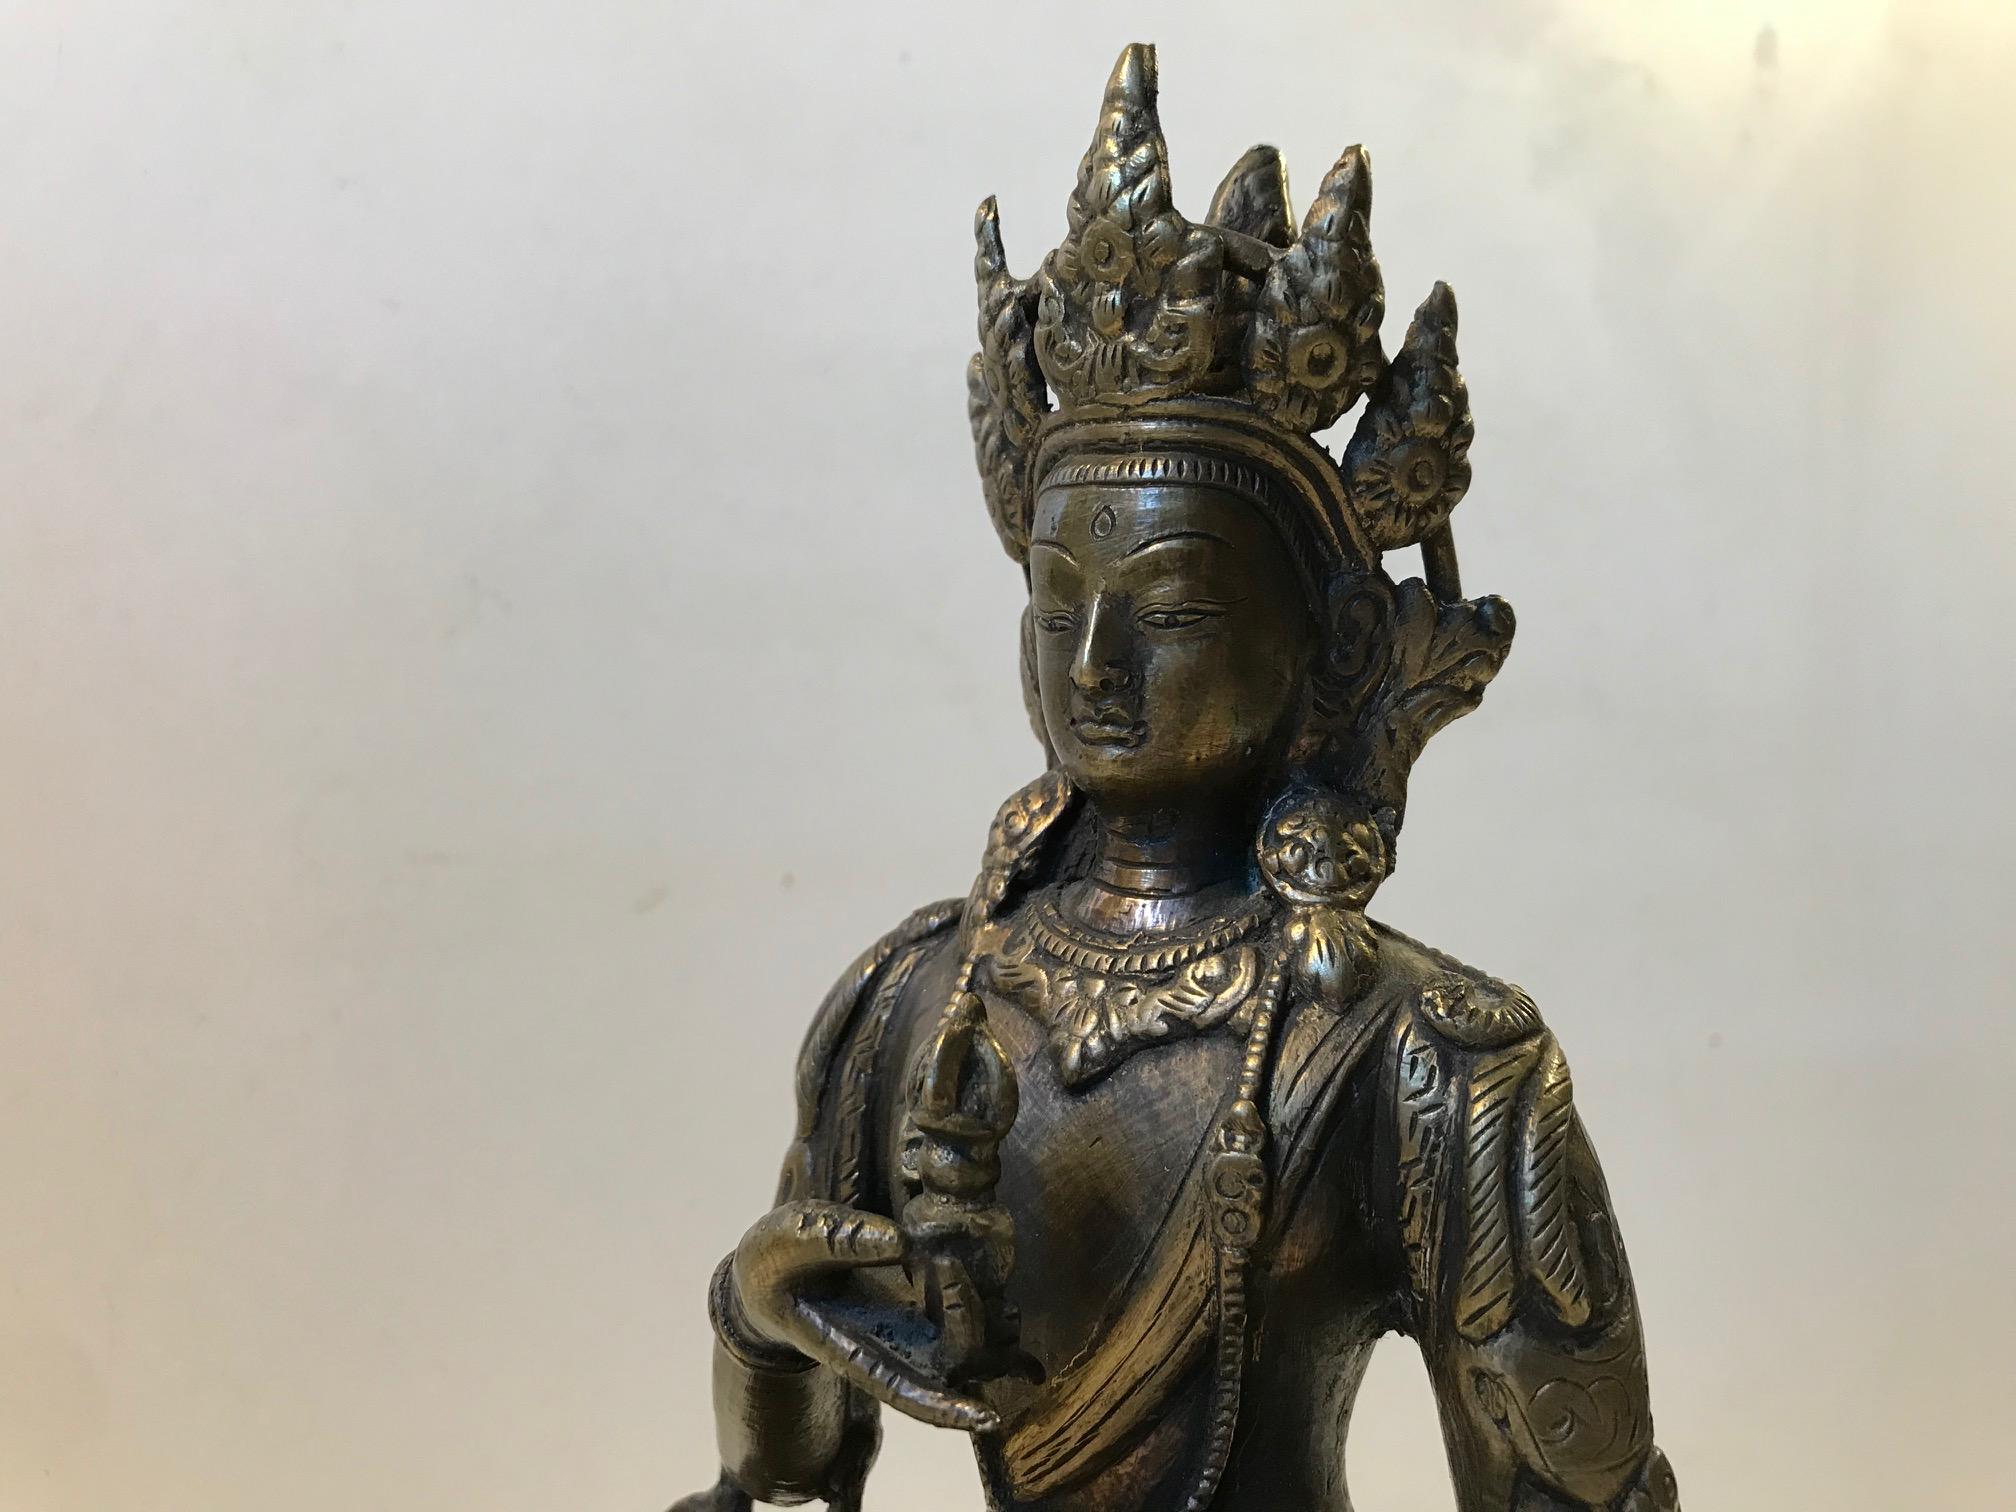 Tibetische, möglicherweise nepalesische Bronze, 18.-19. Jahrhundert. Detaillierte Vajrasattva-Figur, ein Bodhisattva. Er sitzt friedlich in Dhyanasana (Meditationshaltung) und ruht auf einem einzelnen Lotosfuß. In beiden Händen ihre Attribute, die